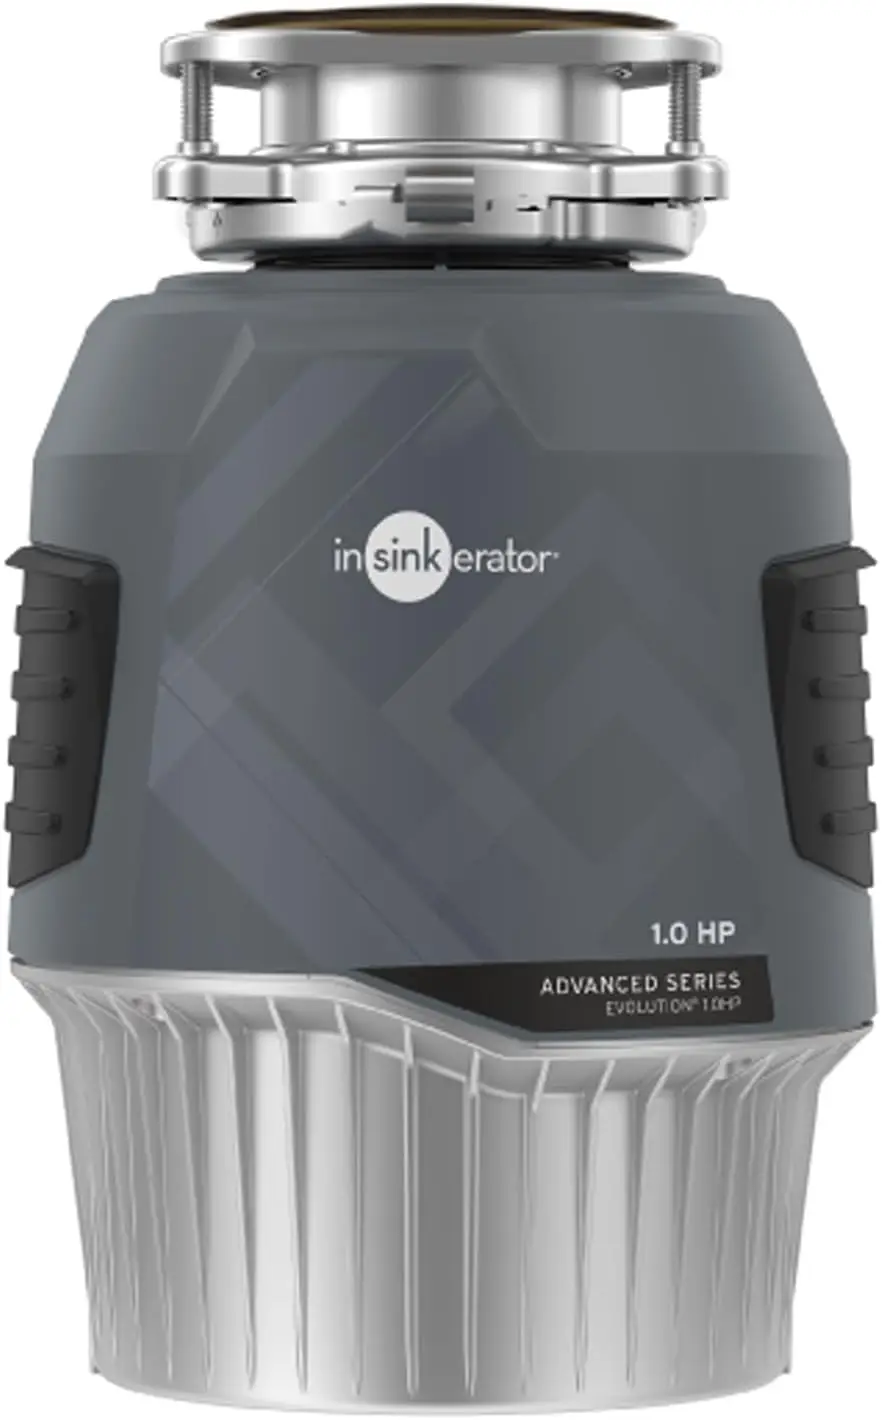 

InSinkErator EVOLUTION 1HP 1 HP, Современная серия непрерывного удаления мусора из пищевых отходов, серый цвет